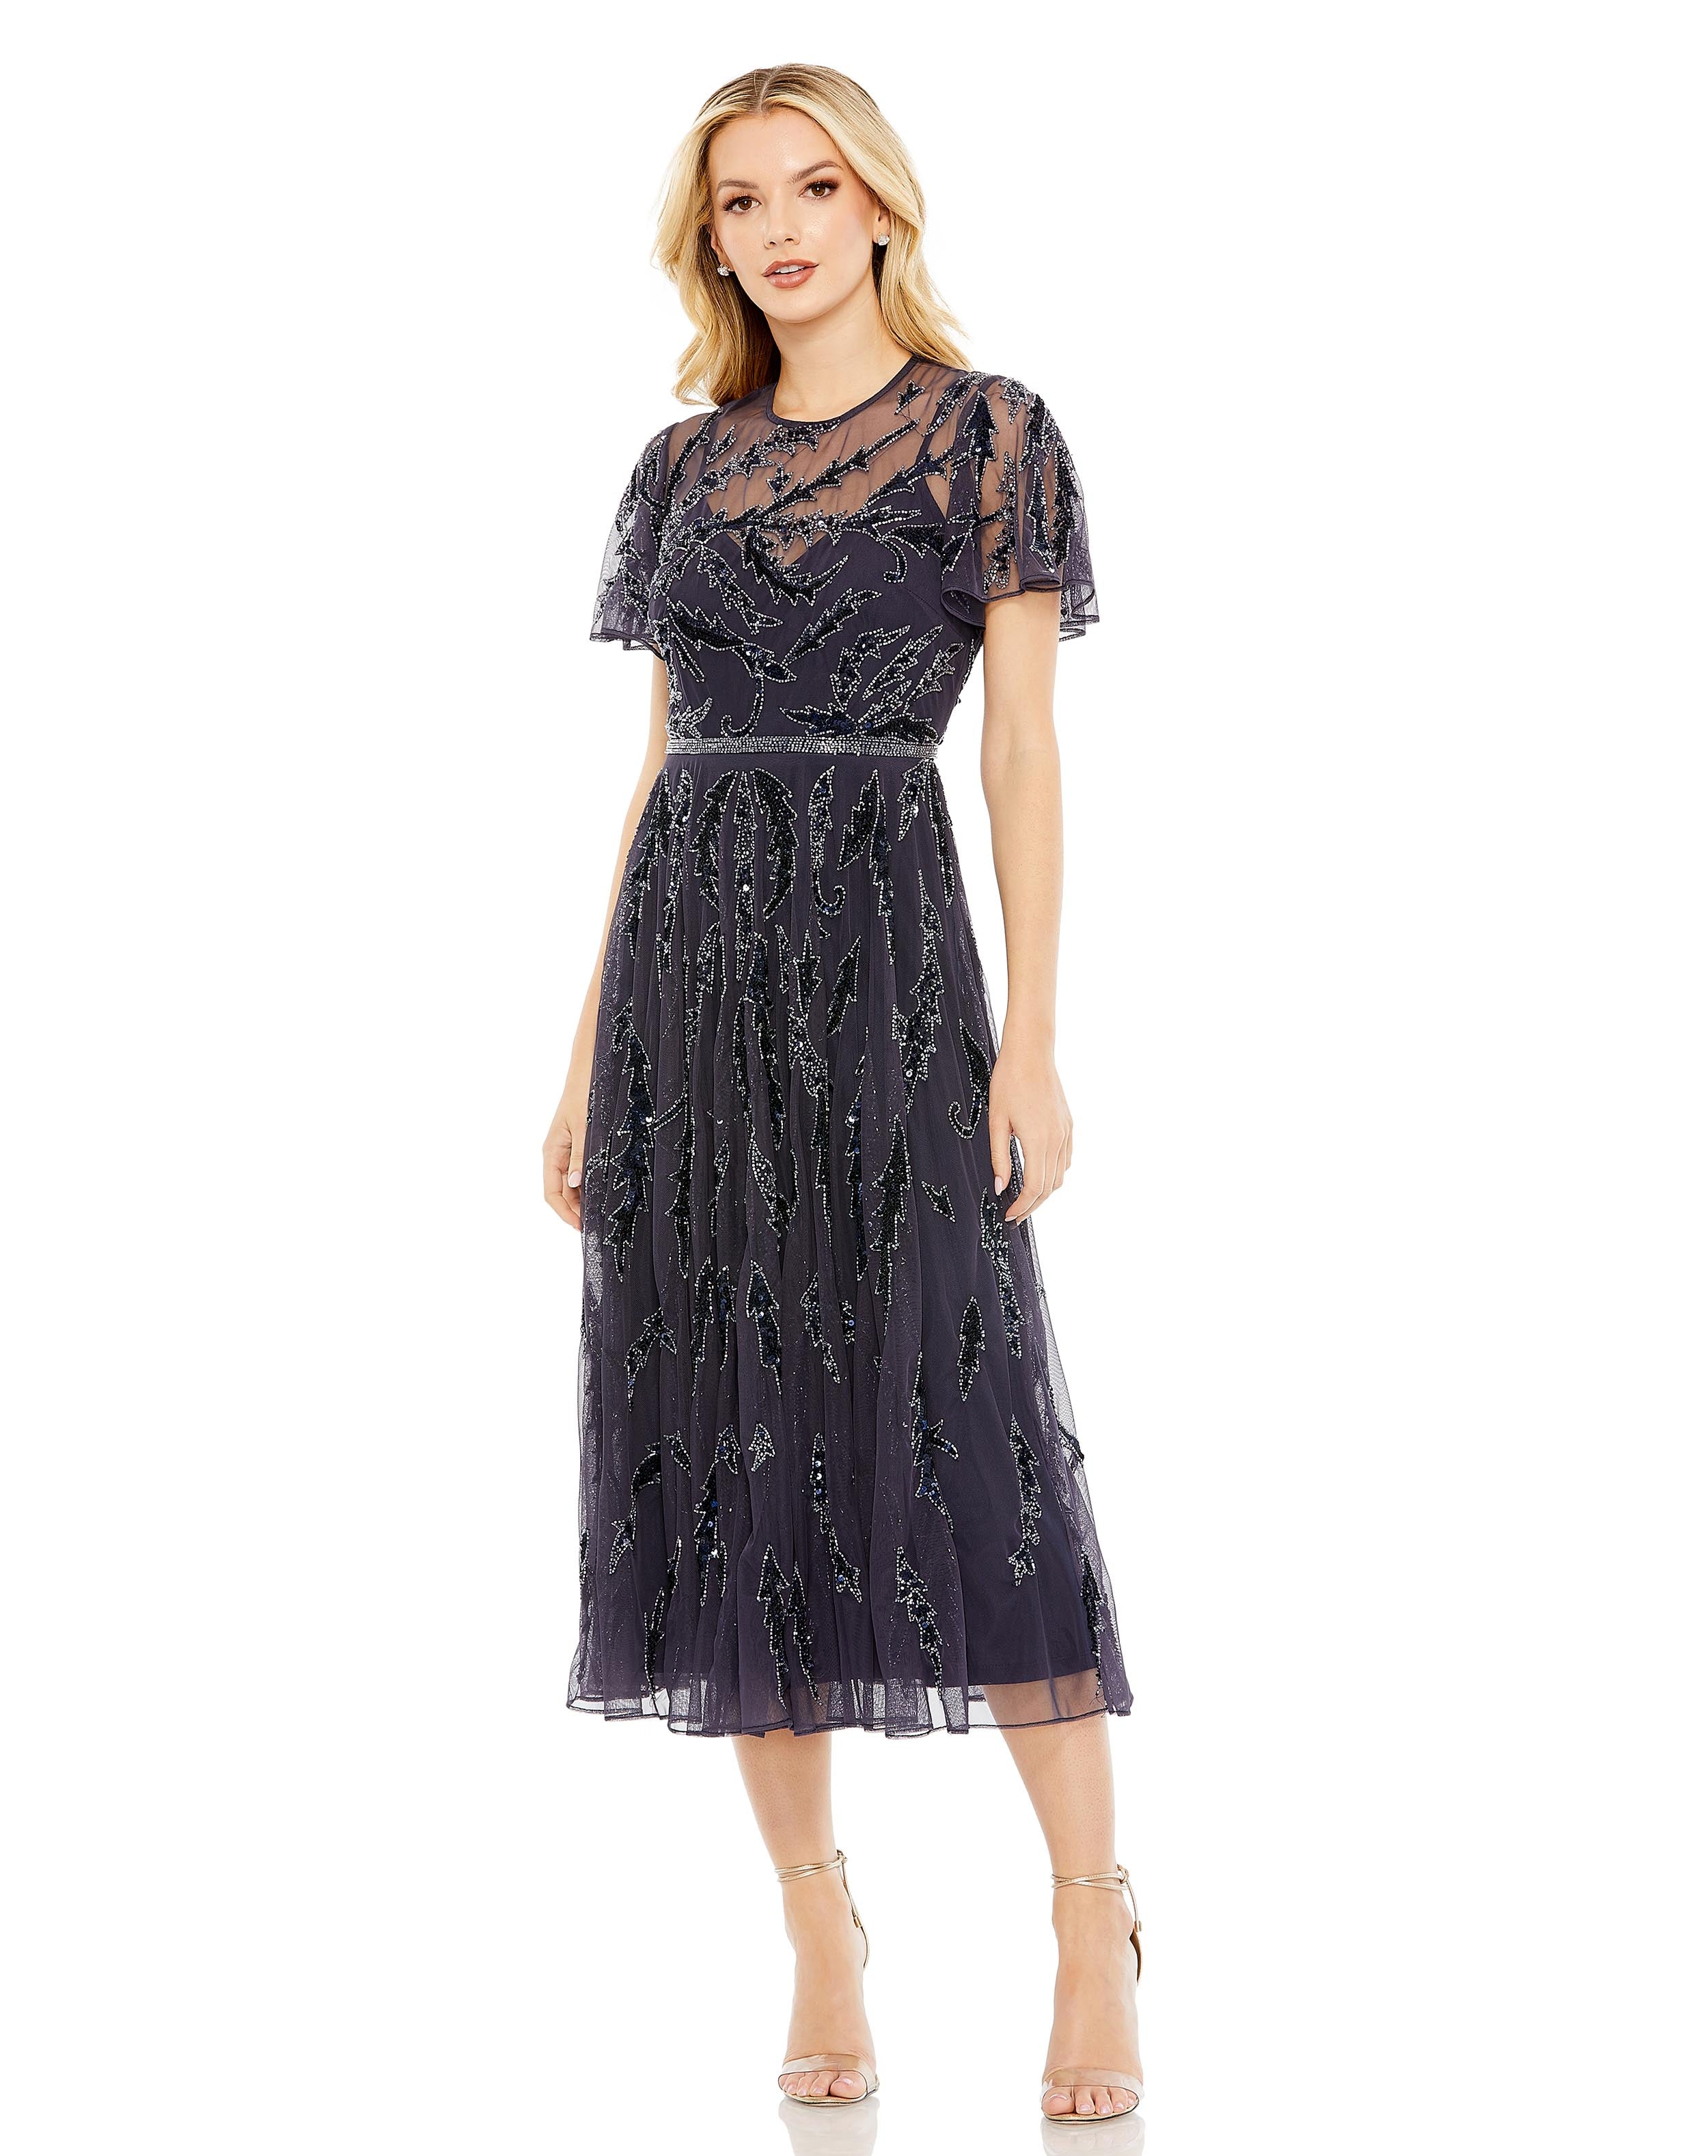 Embellished Ruffle Sleeve Dress | Sample | Sz. 4